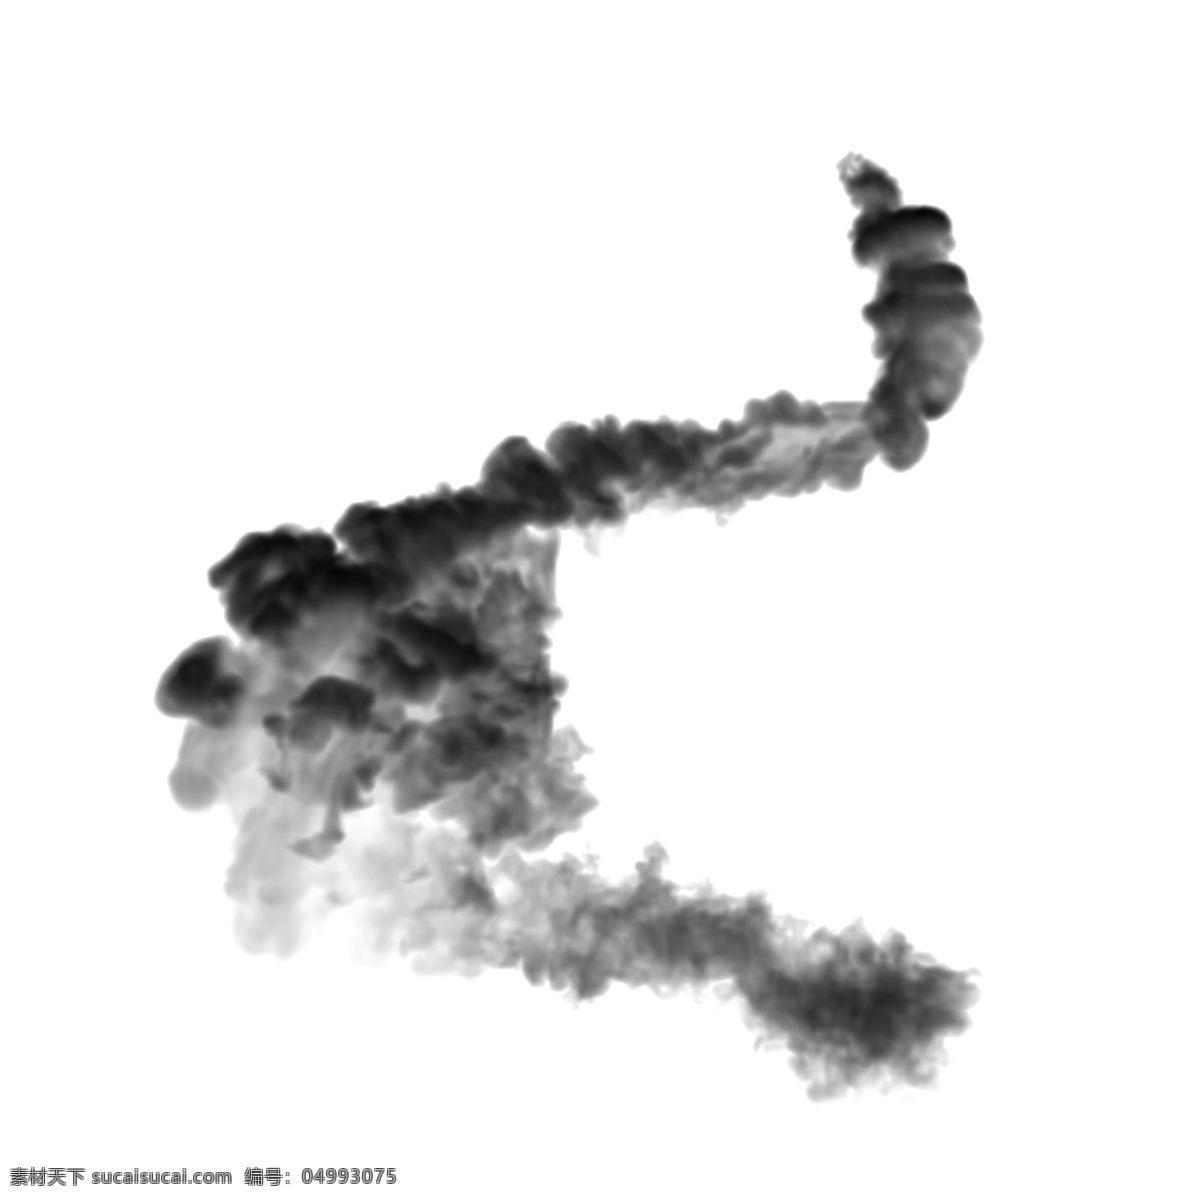 s 型 黑色 蘑菇云 s型蘑菇云 创意 抽象 惊奇 美丽 装饰 商务 不规则图形 晕染 中国风 卡通手绘 渐变